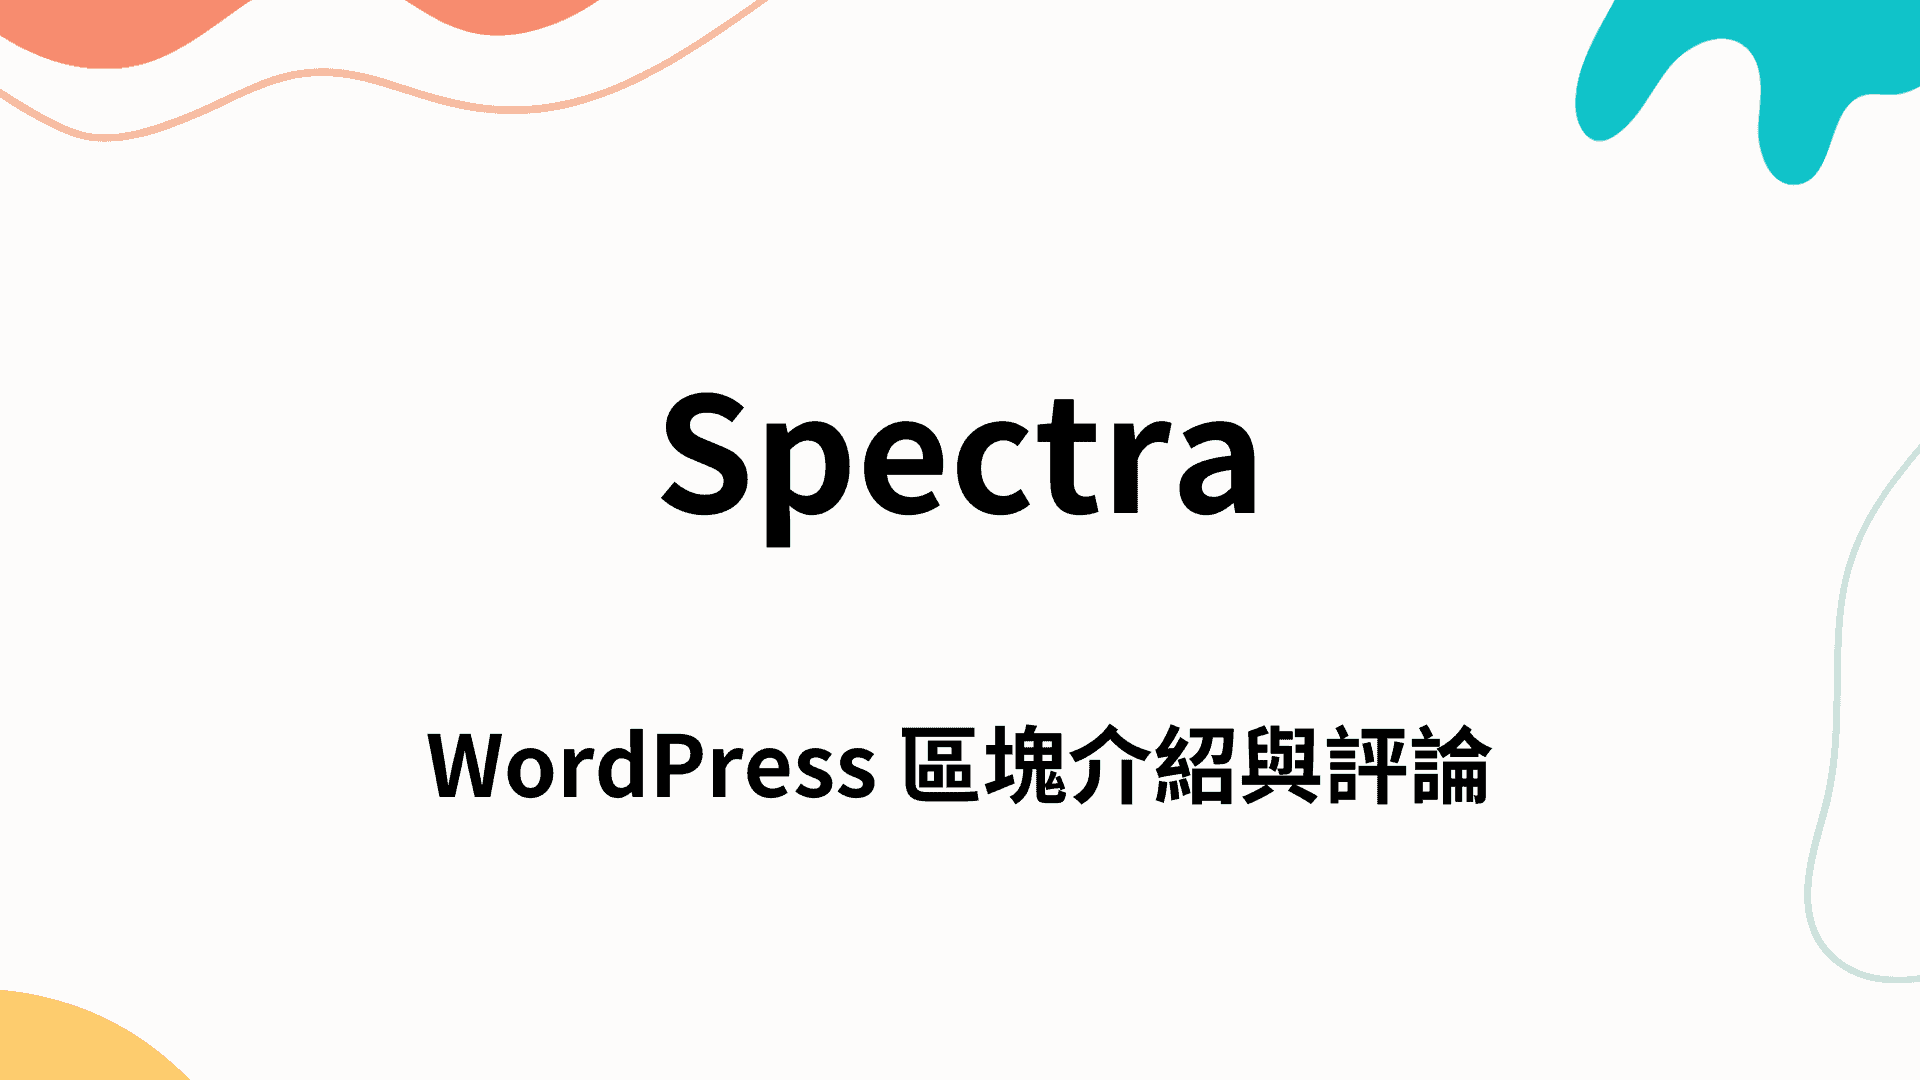 Spectra｜WordPress 區塊介紹與評論